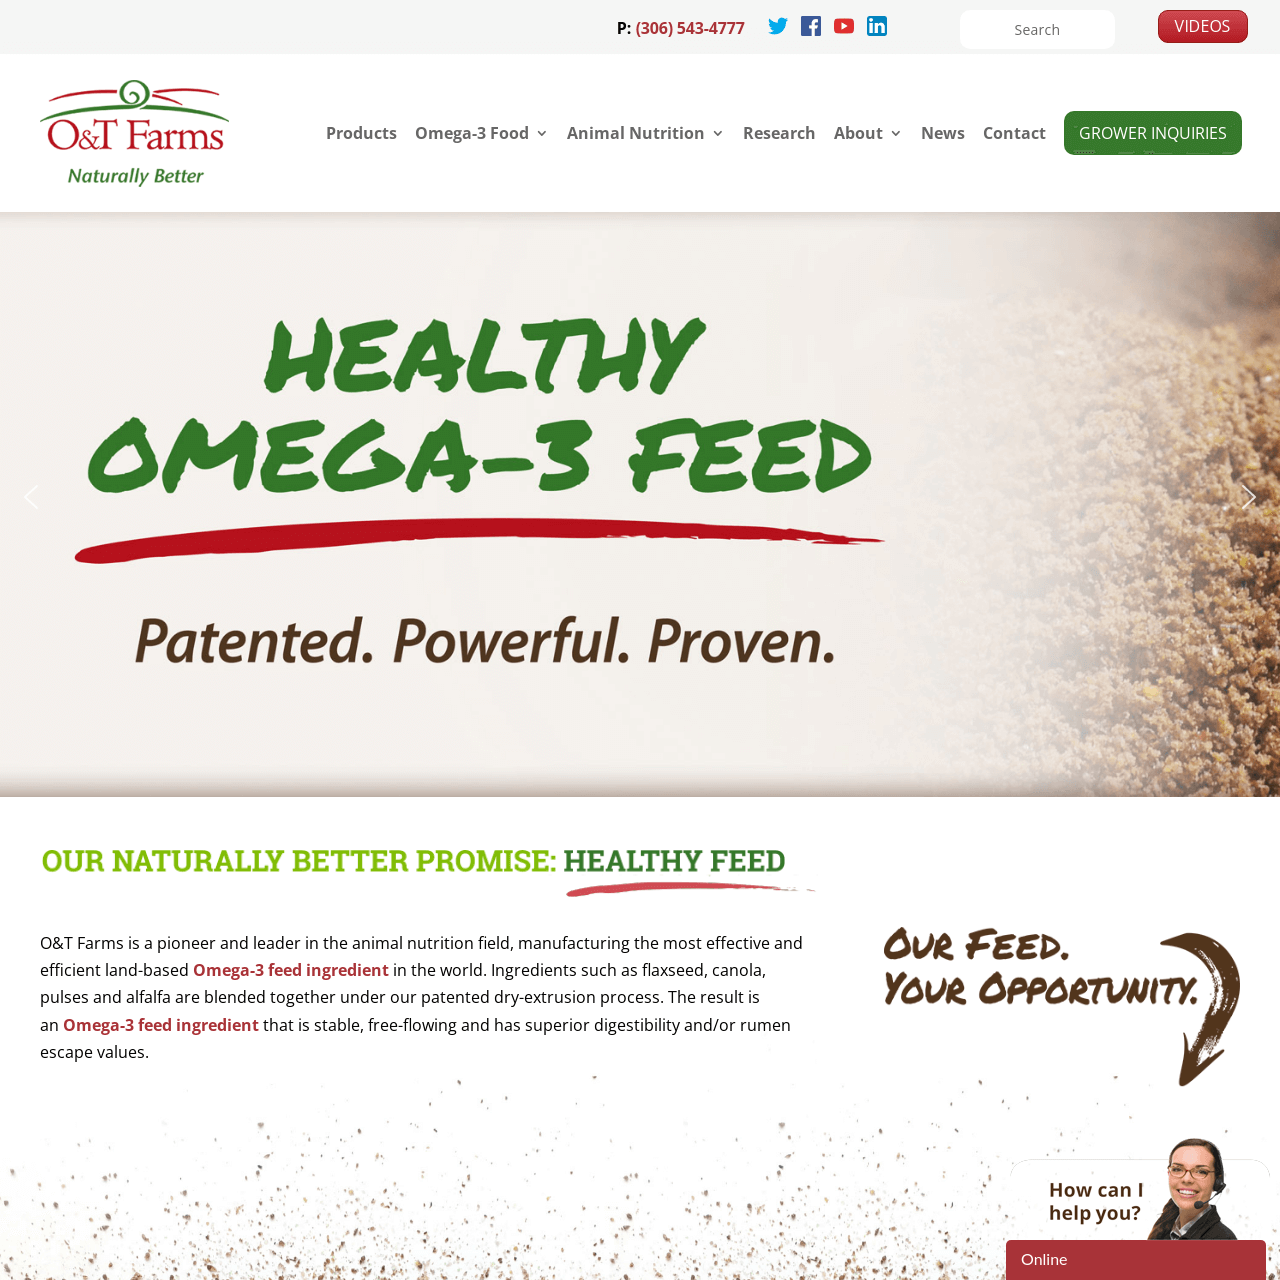 O&T Farms website designed by 6P Marketing